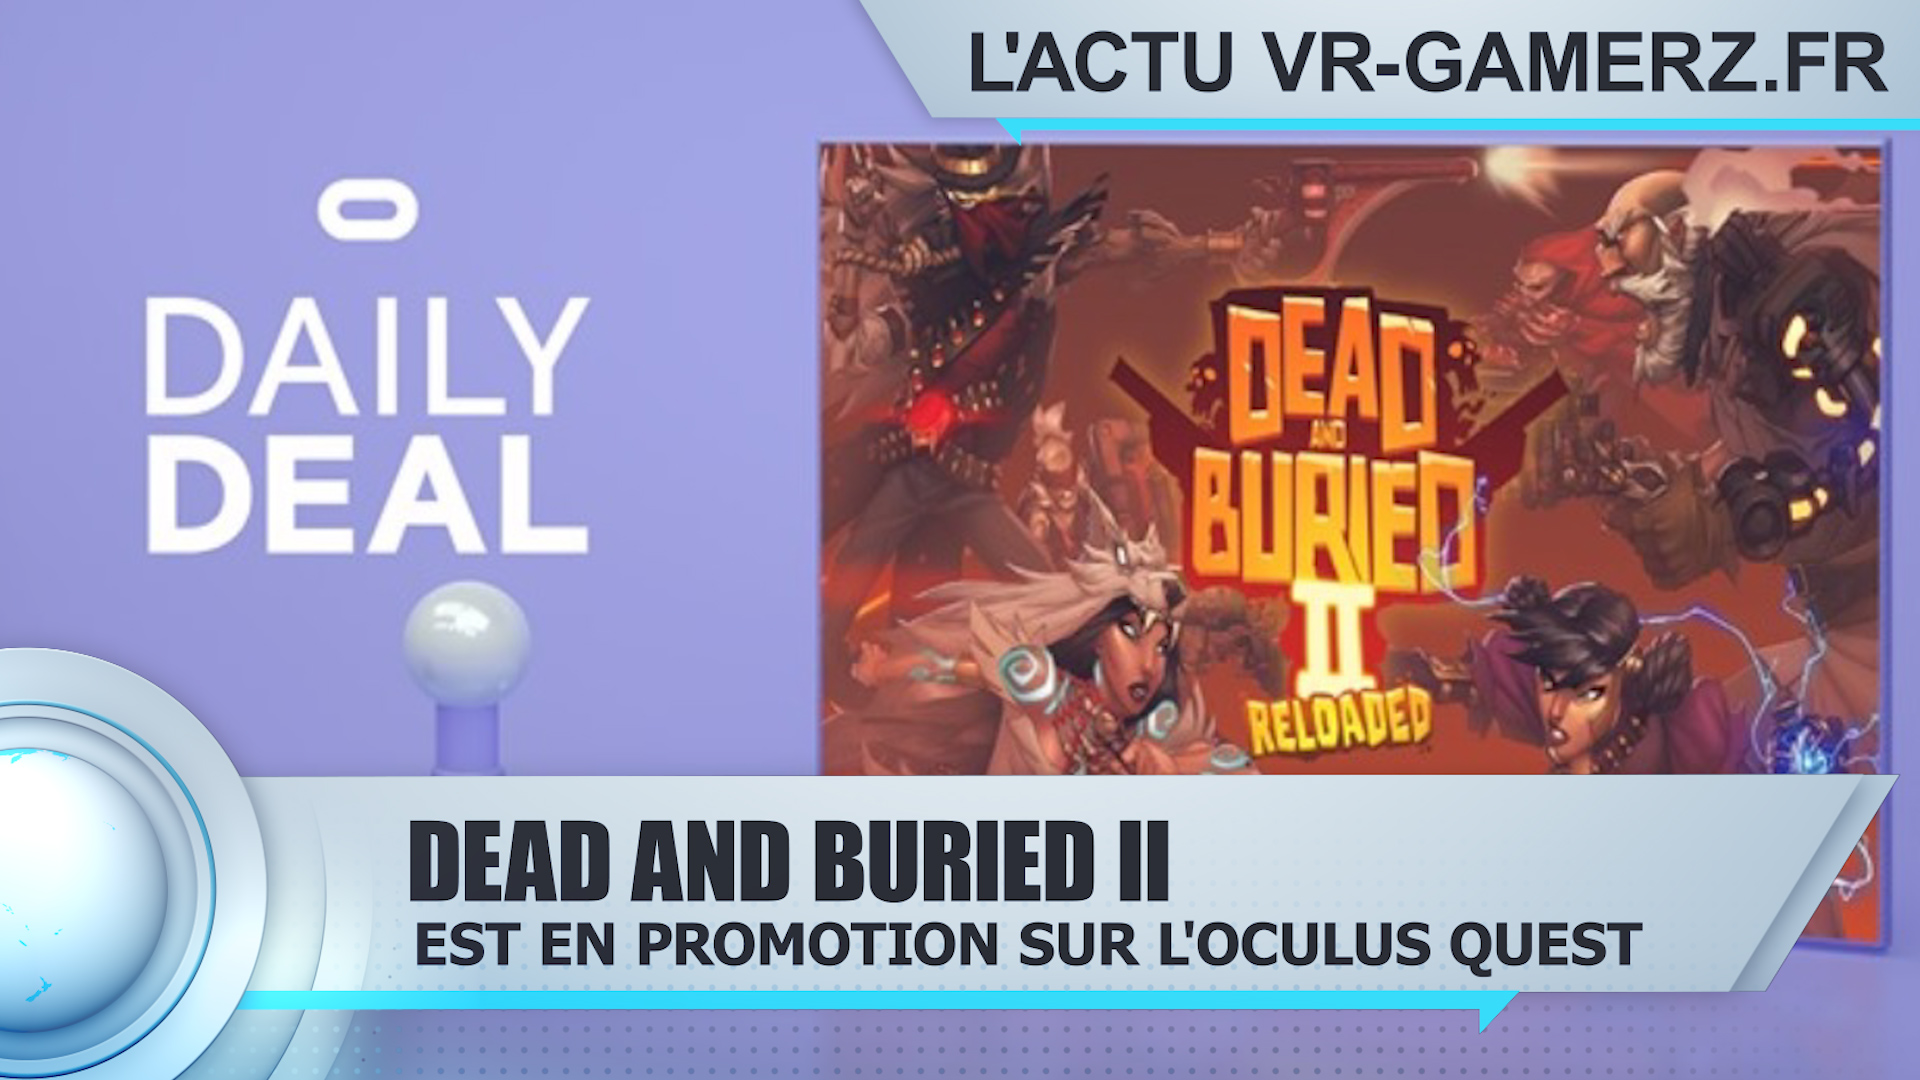 Dead and Buried II Oculus quest est en promotion